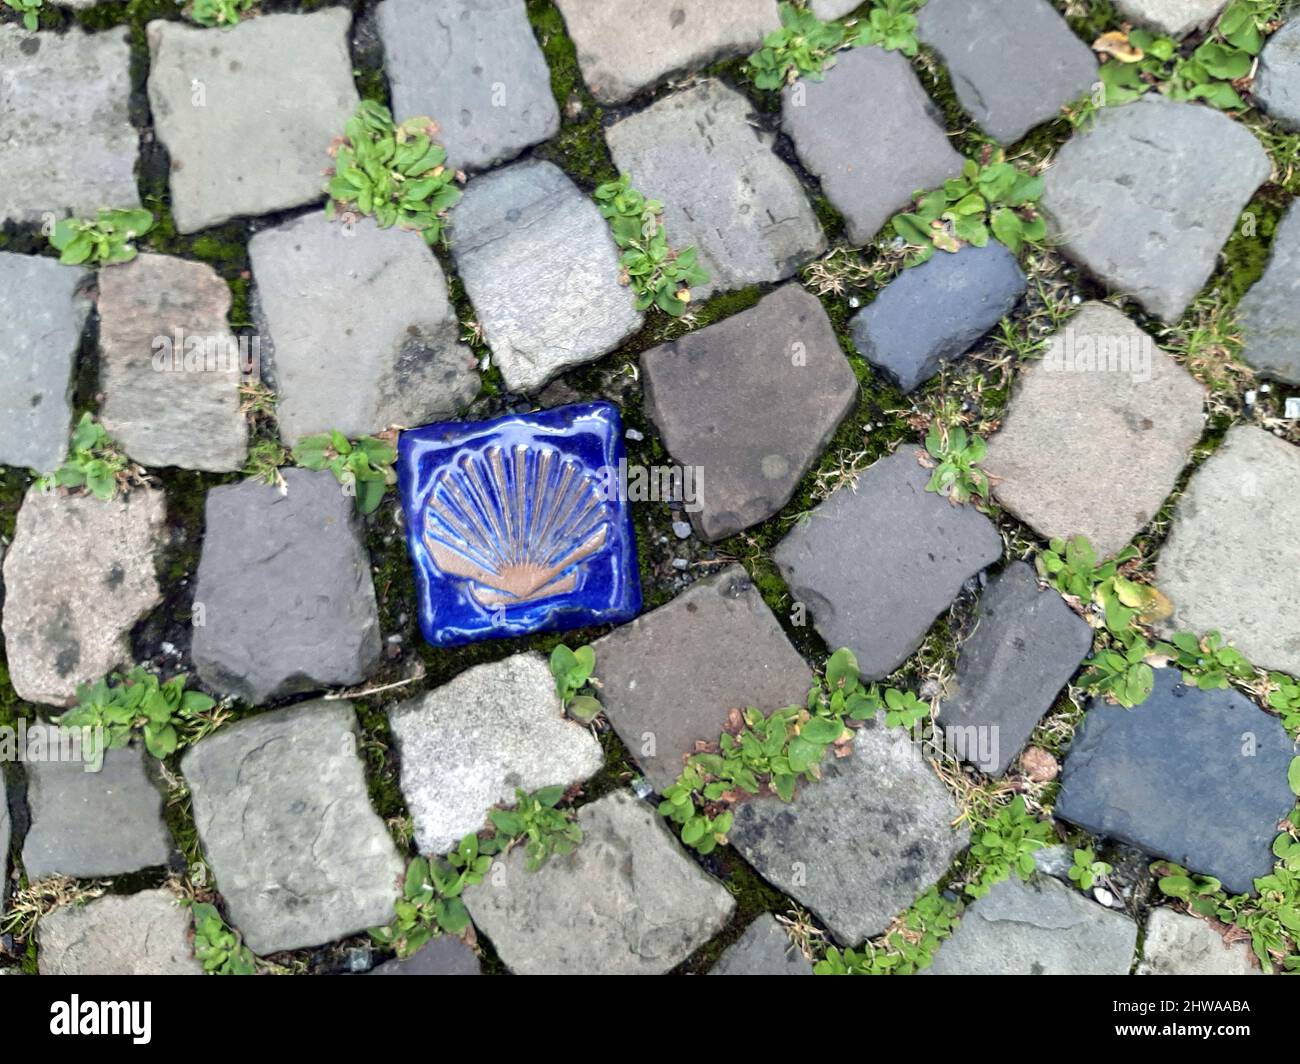 Camino de San James Peregrinaje - emblema de cerámica entre pavimentación de piedra natural con vegetación de grietas, Alemania Foto de stock